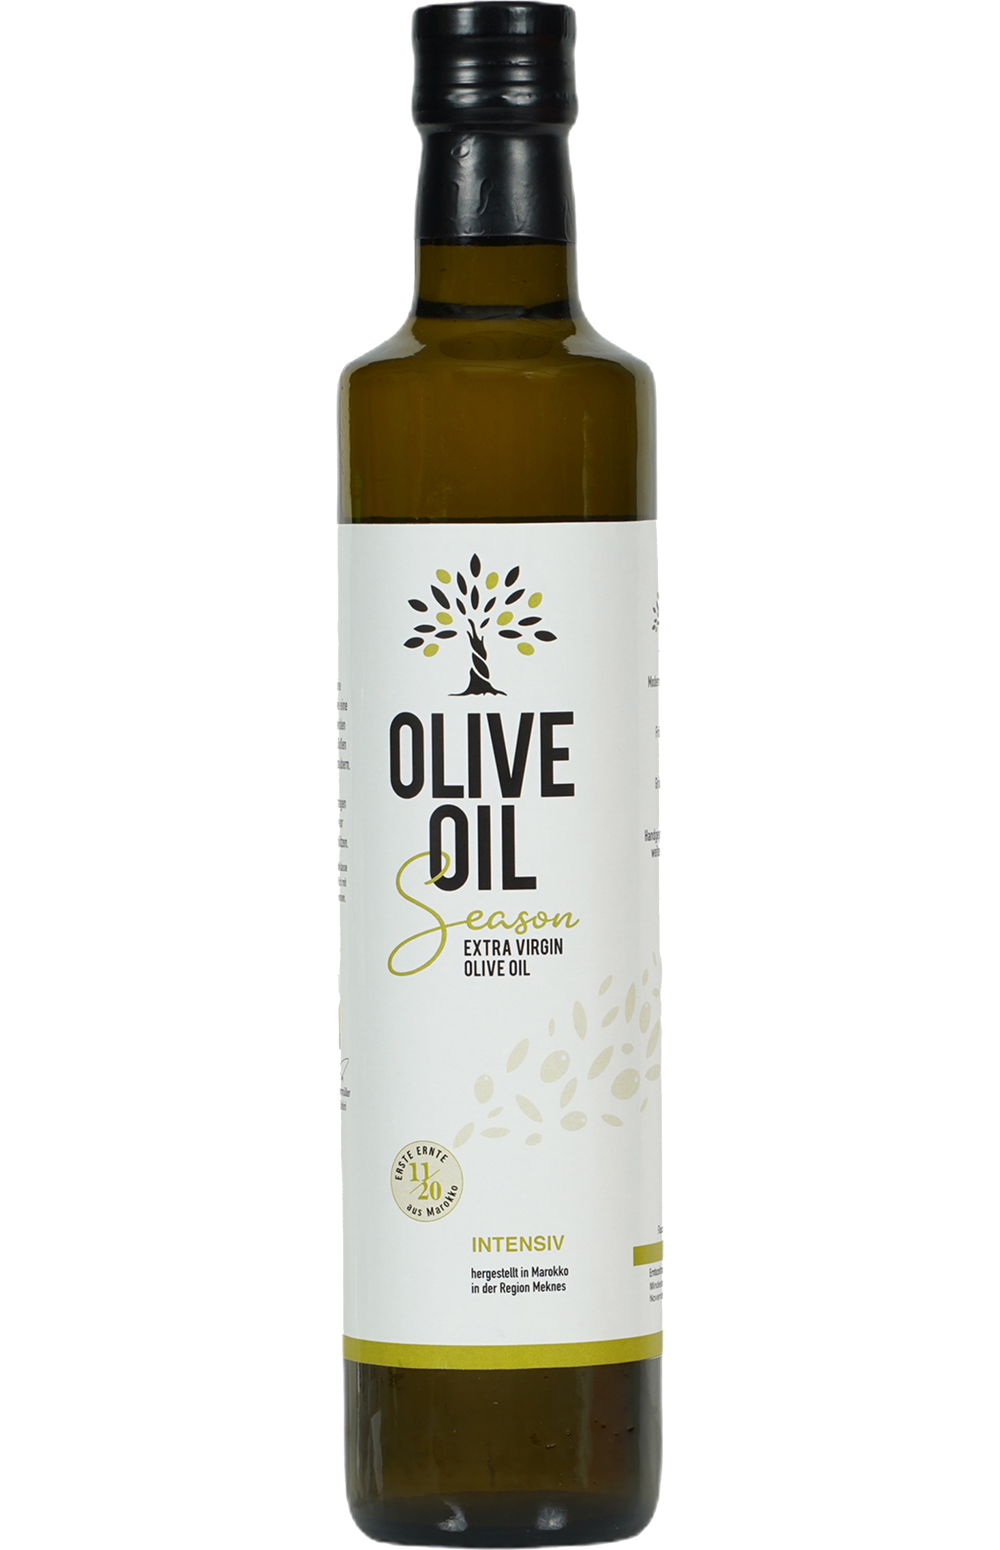 Olive Oil Season